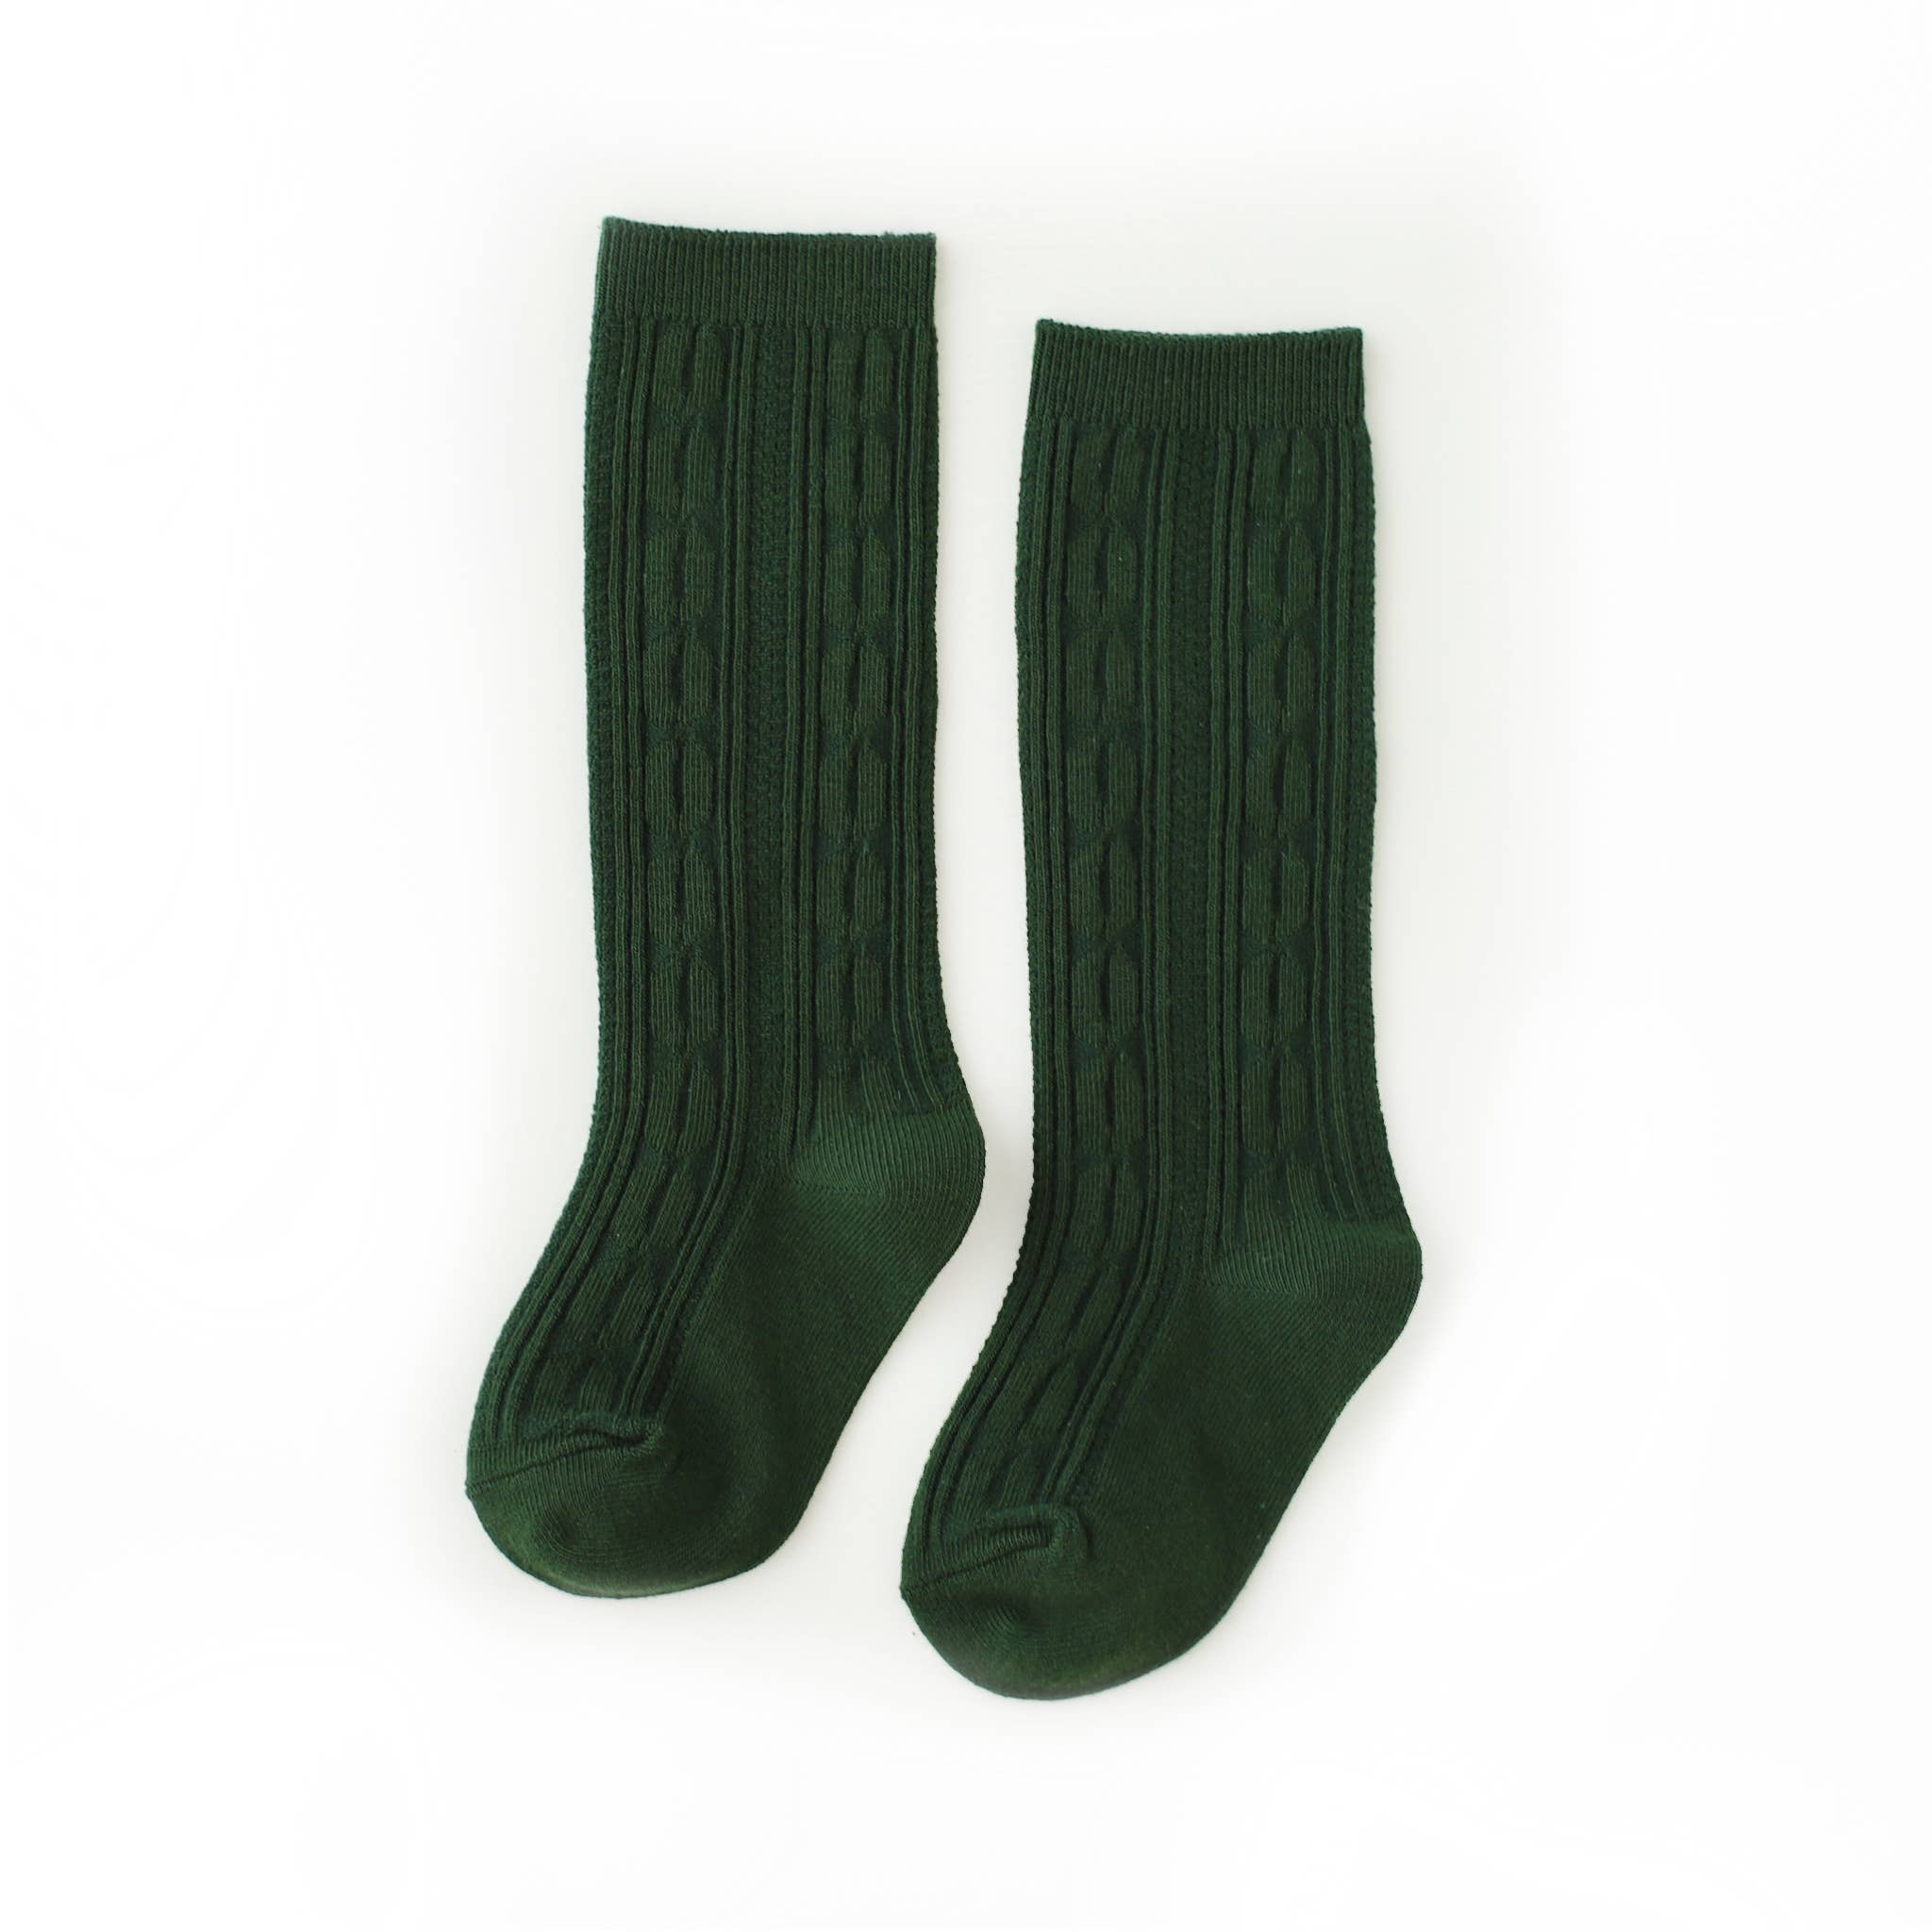 Rolling Over the Knee Socks - Striped Dark Green/Khaki (3 Sizes